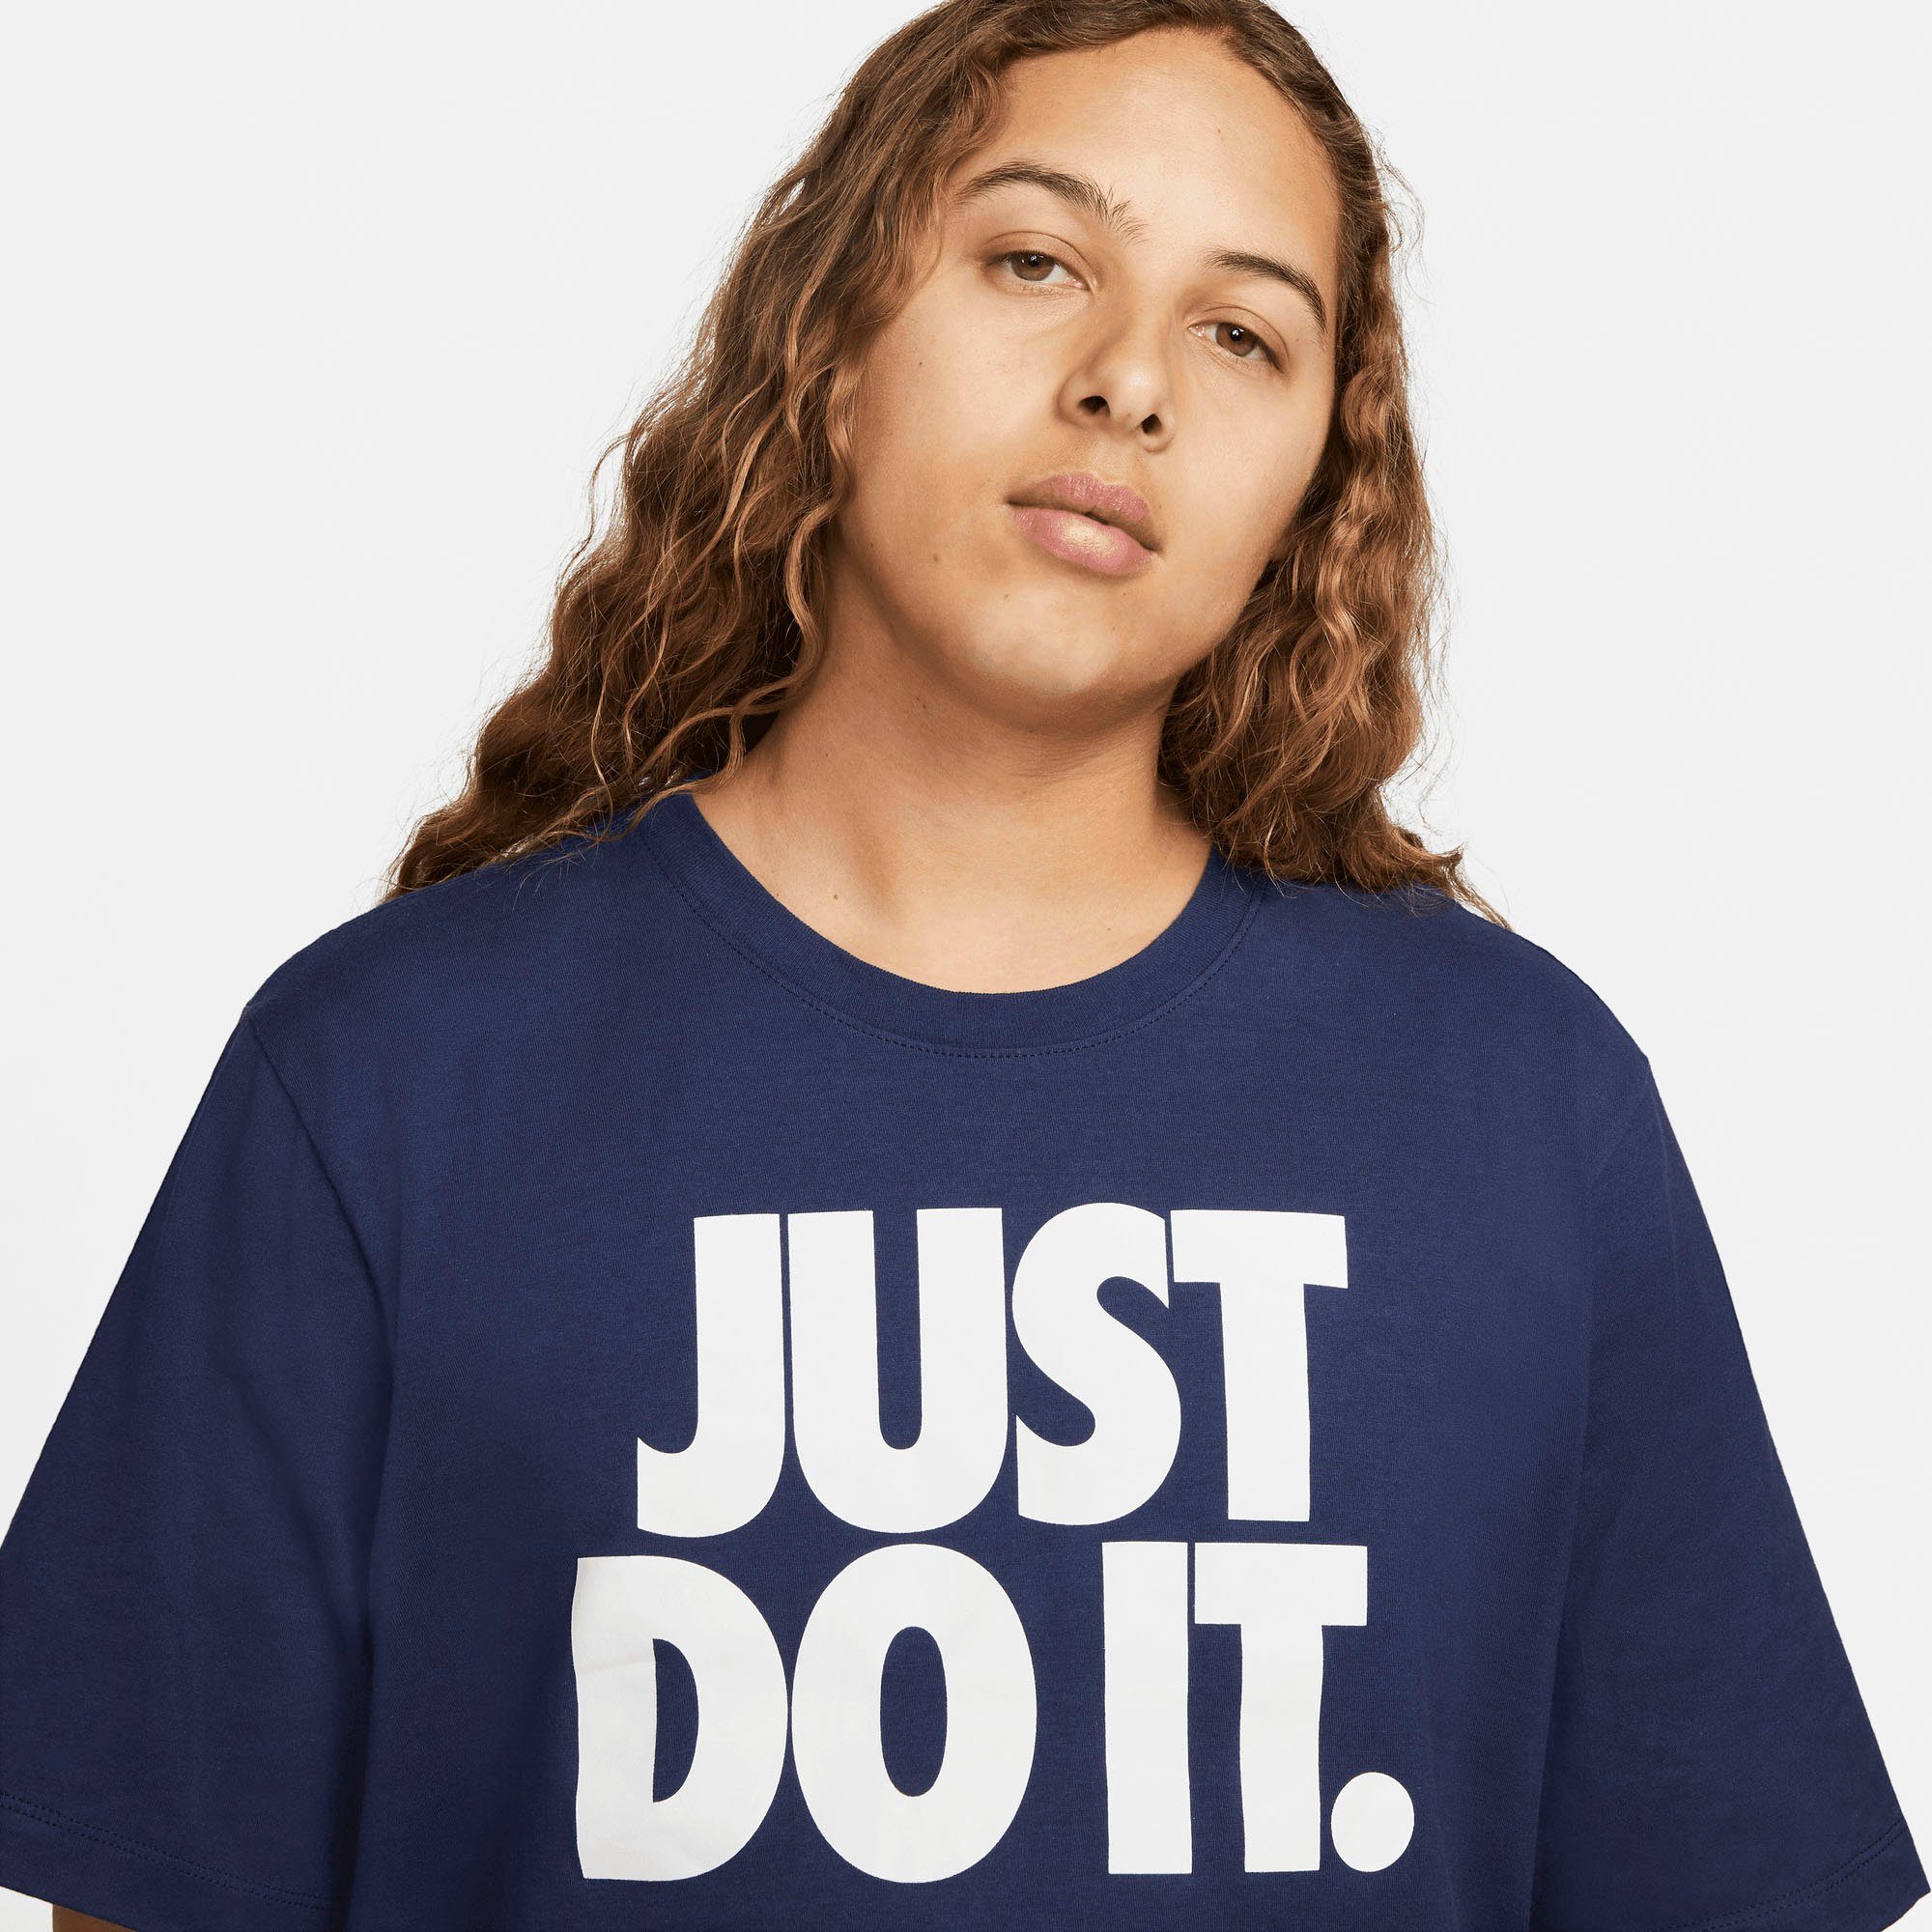 Nike Sportswear T-Shirt blau Men's T-Shirt